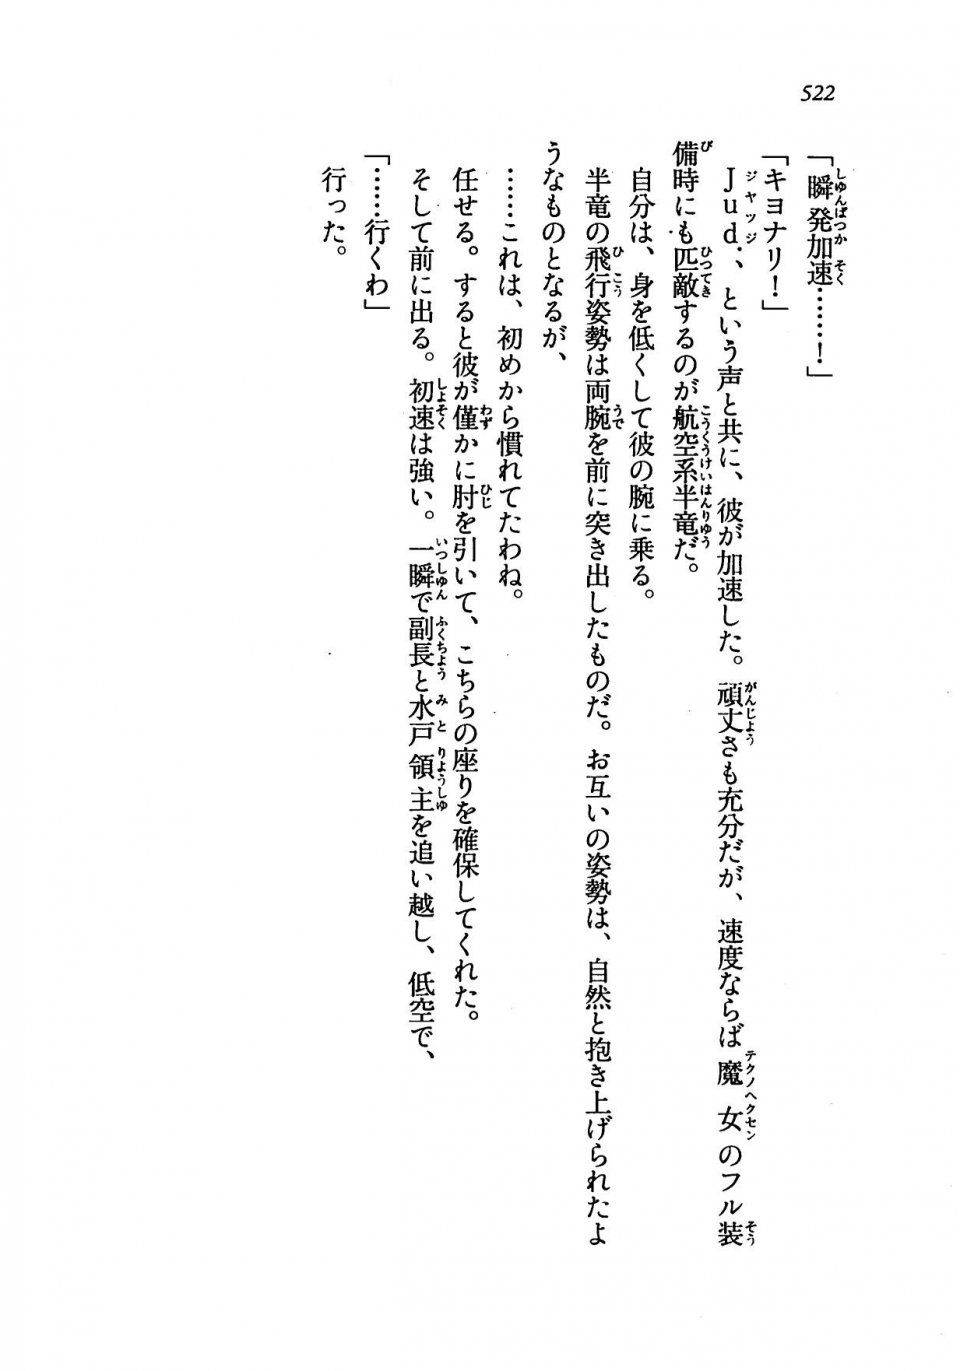 Kyoukai Senjou no Horizon LN Vol 19(8A) - Photo #522